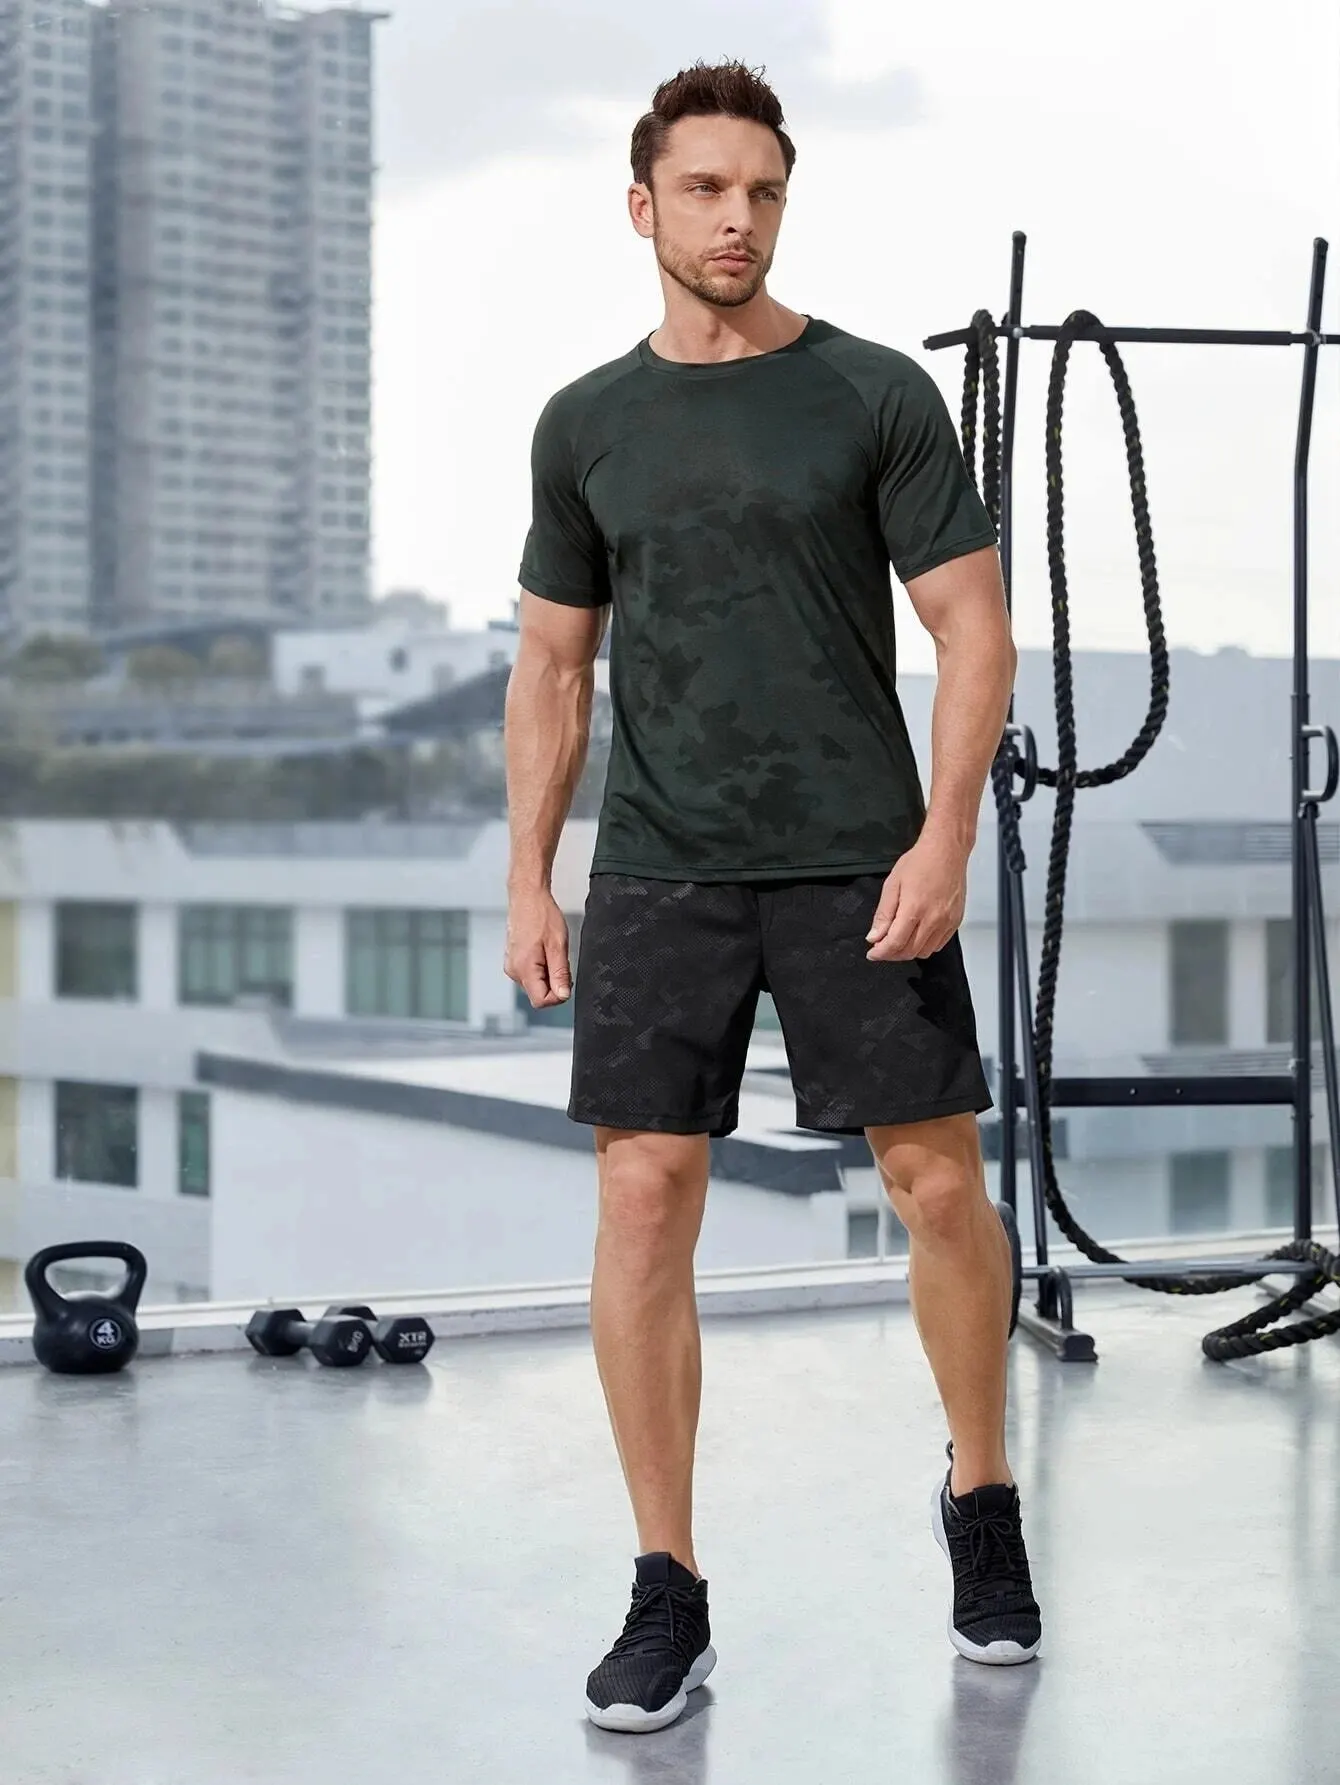 Schnell trocknende atmungsaktive Shorts, Herren-Kordelstring High Stretch Sportsshorts für das Training im Sommer-Fitnessstudio